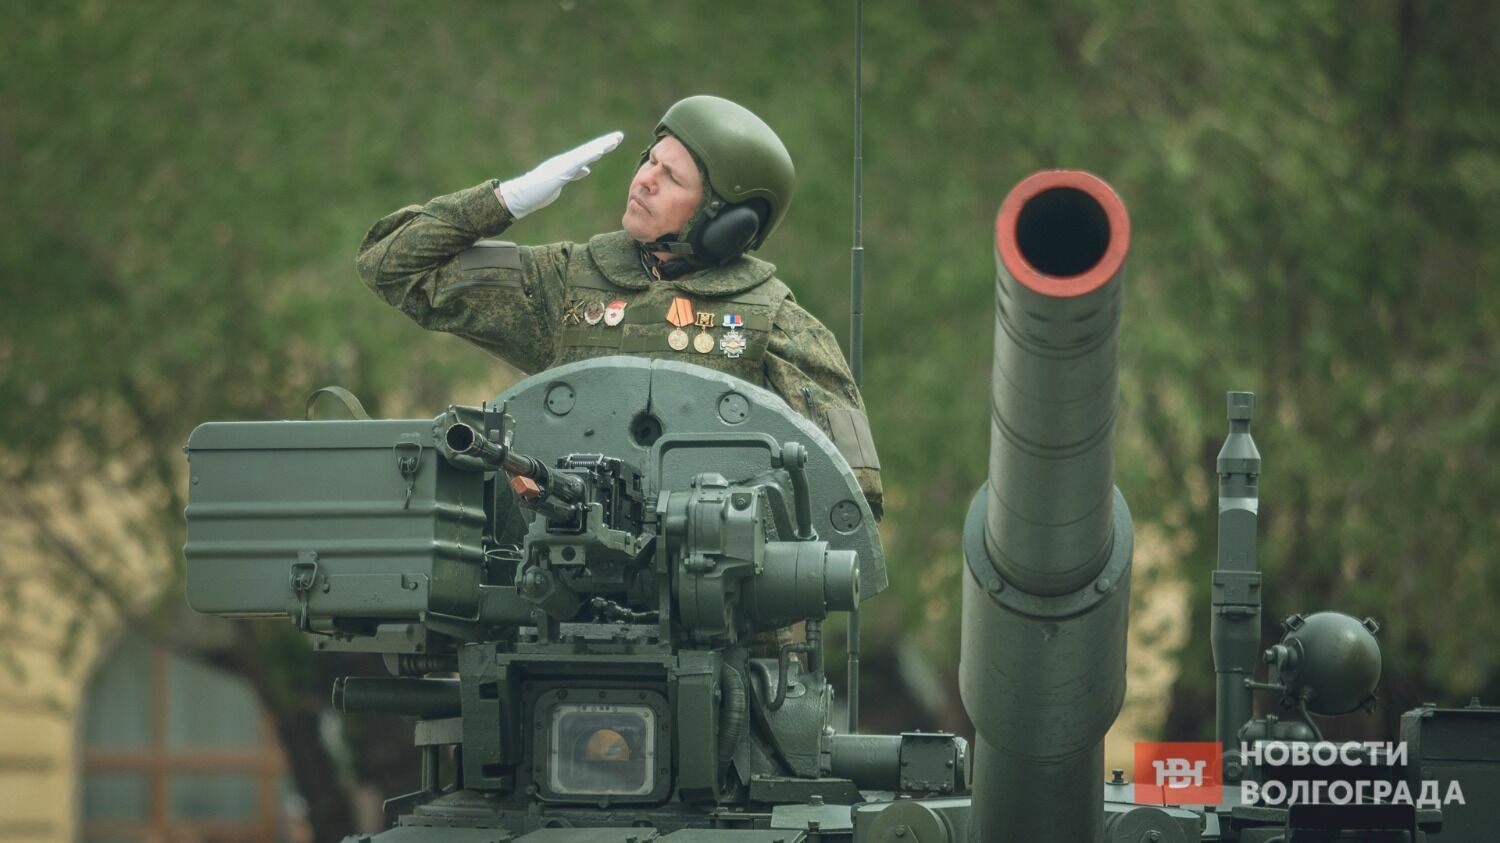 В колонне военной техники - танки и бронемашины Великой Отечественной войны и современная техника